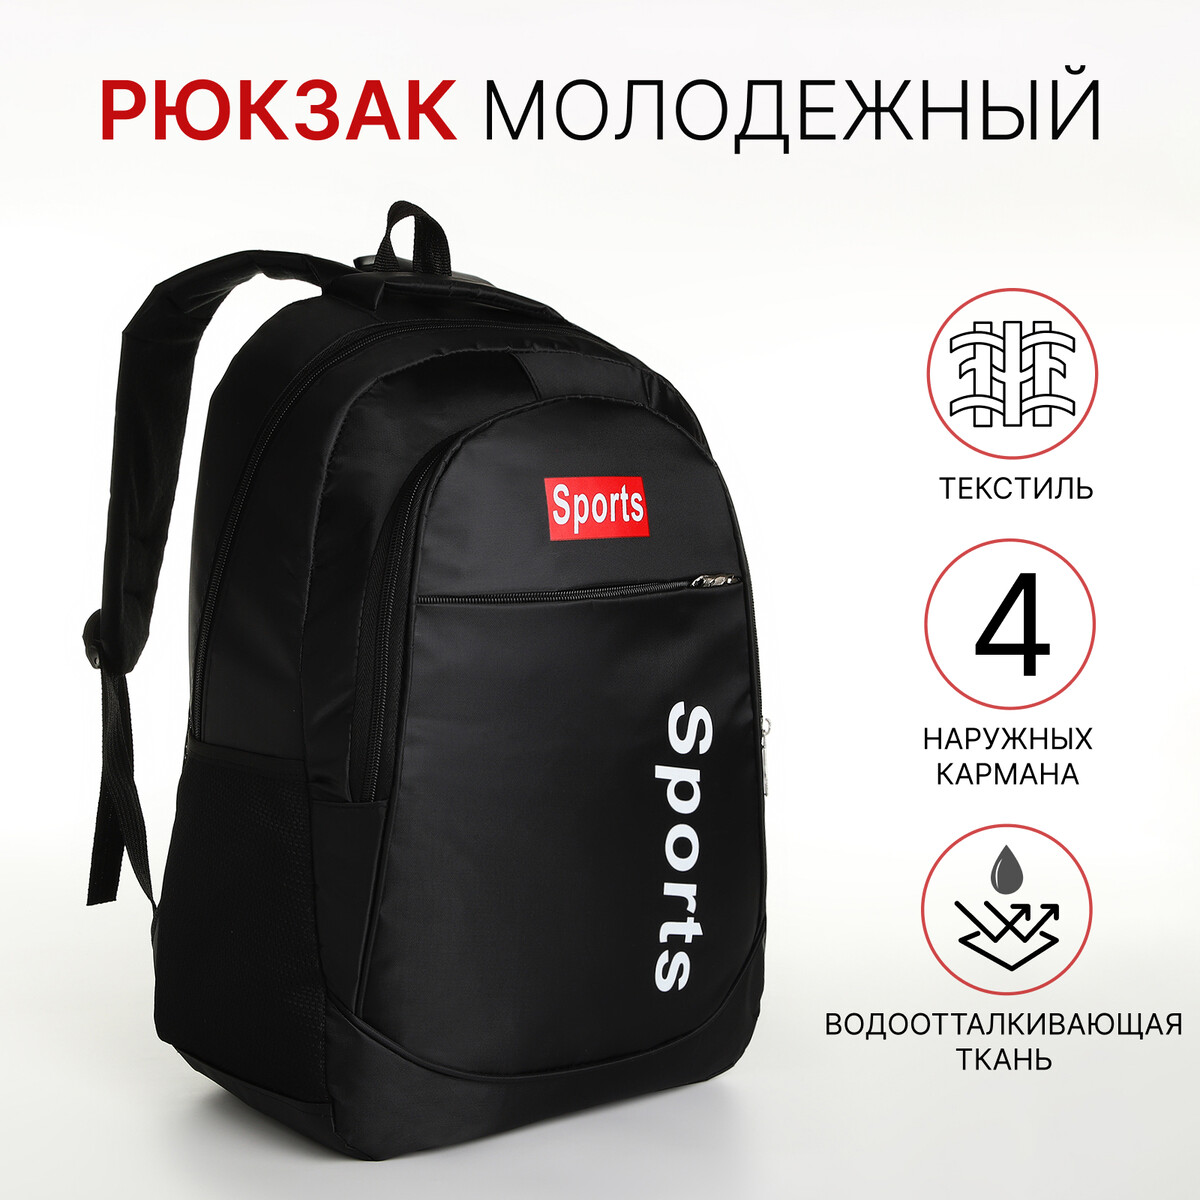 Рюкзак молодежный на молнии, 4 кармана, цвет черный/красный рюкзак торба молодежный отдел на стяжке шнурком красный